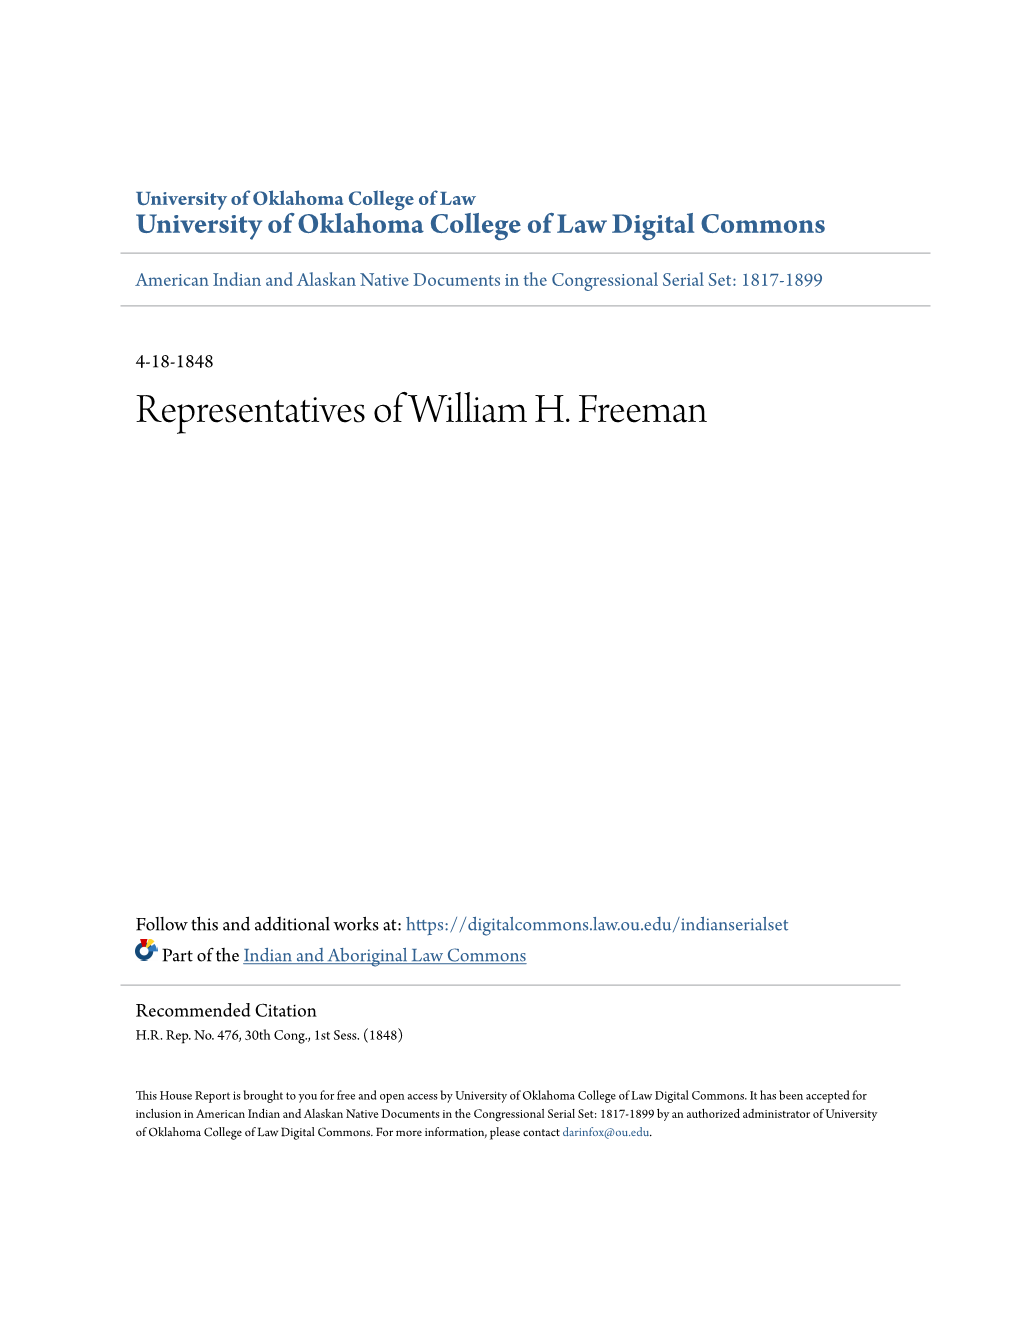 Representatives of William H. Freeman